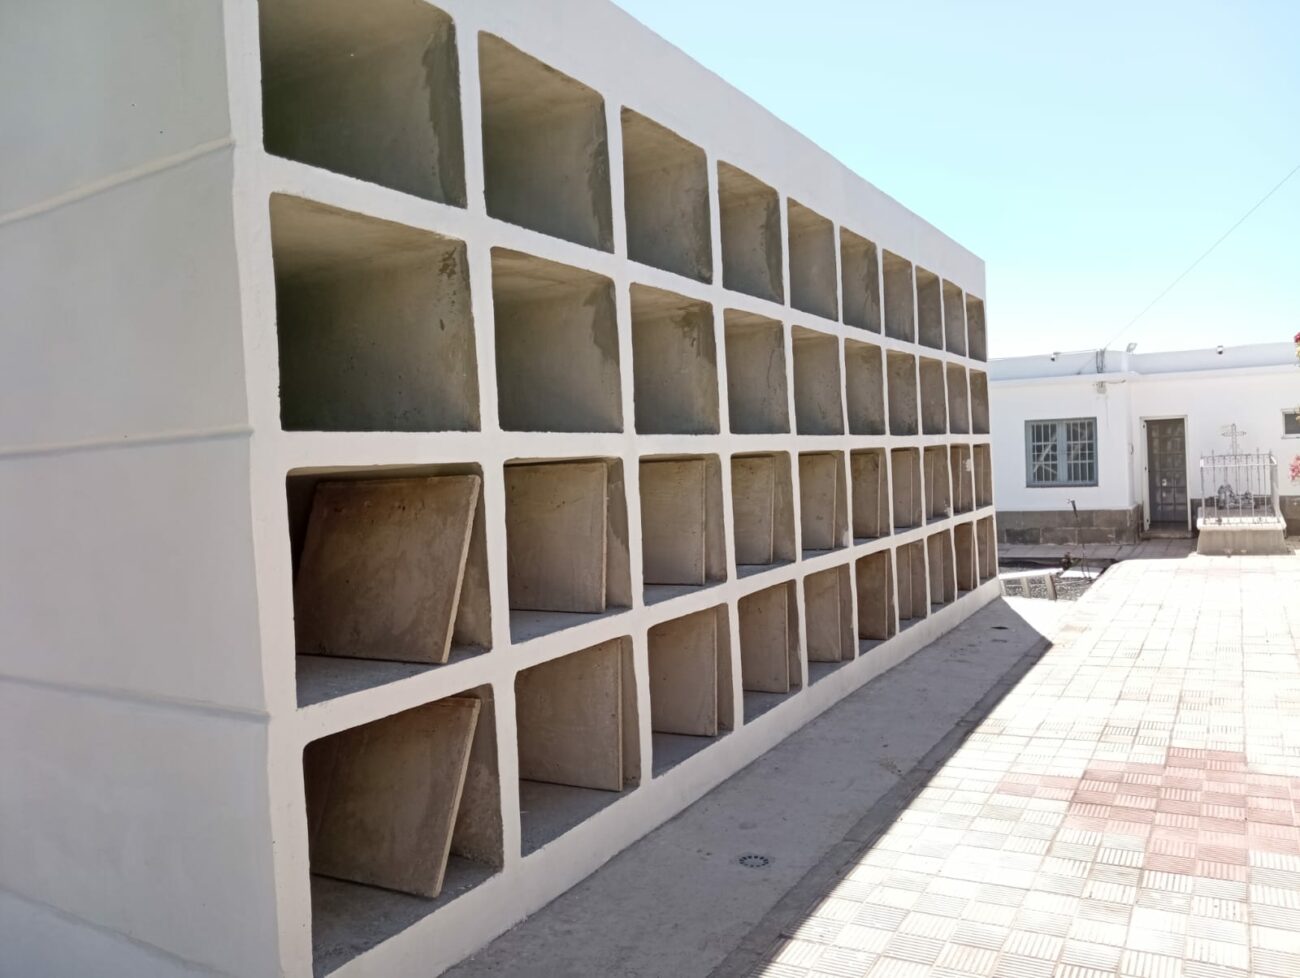 Esquelas.es | Finalizan las obras de ampliacin en el cementerio de Candelaria con nuevos nichos